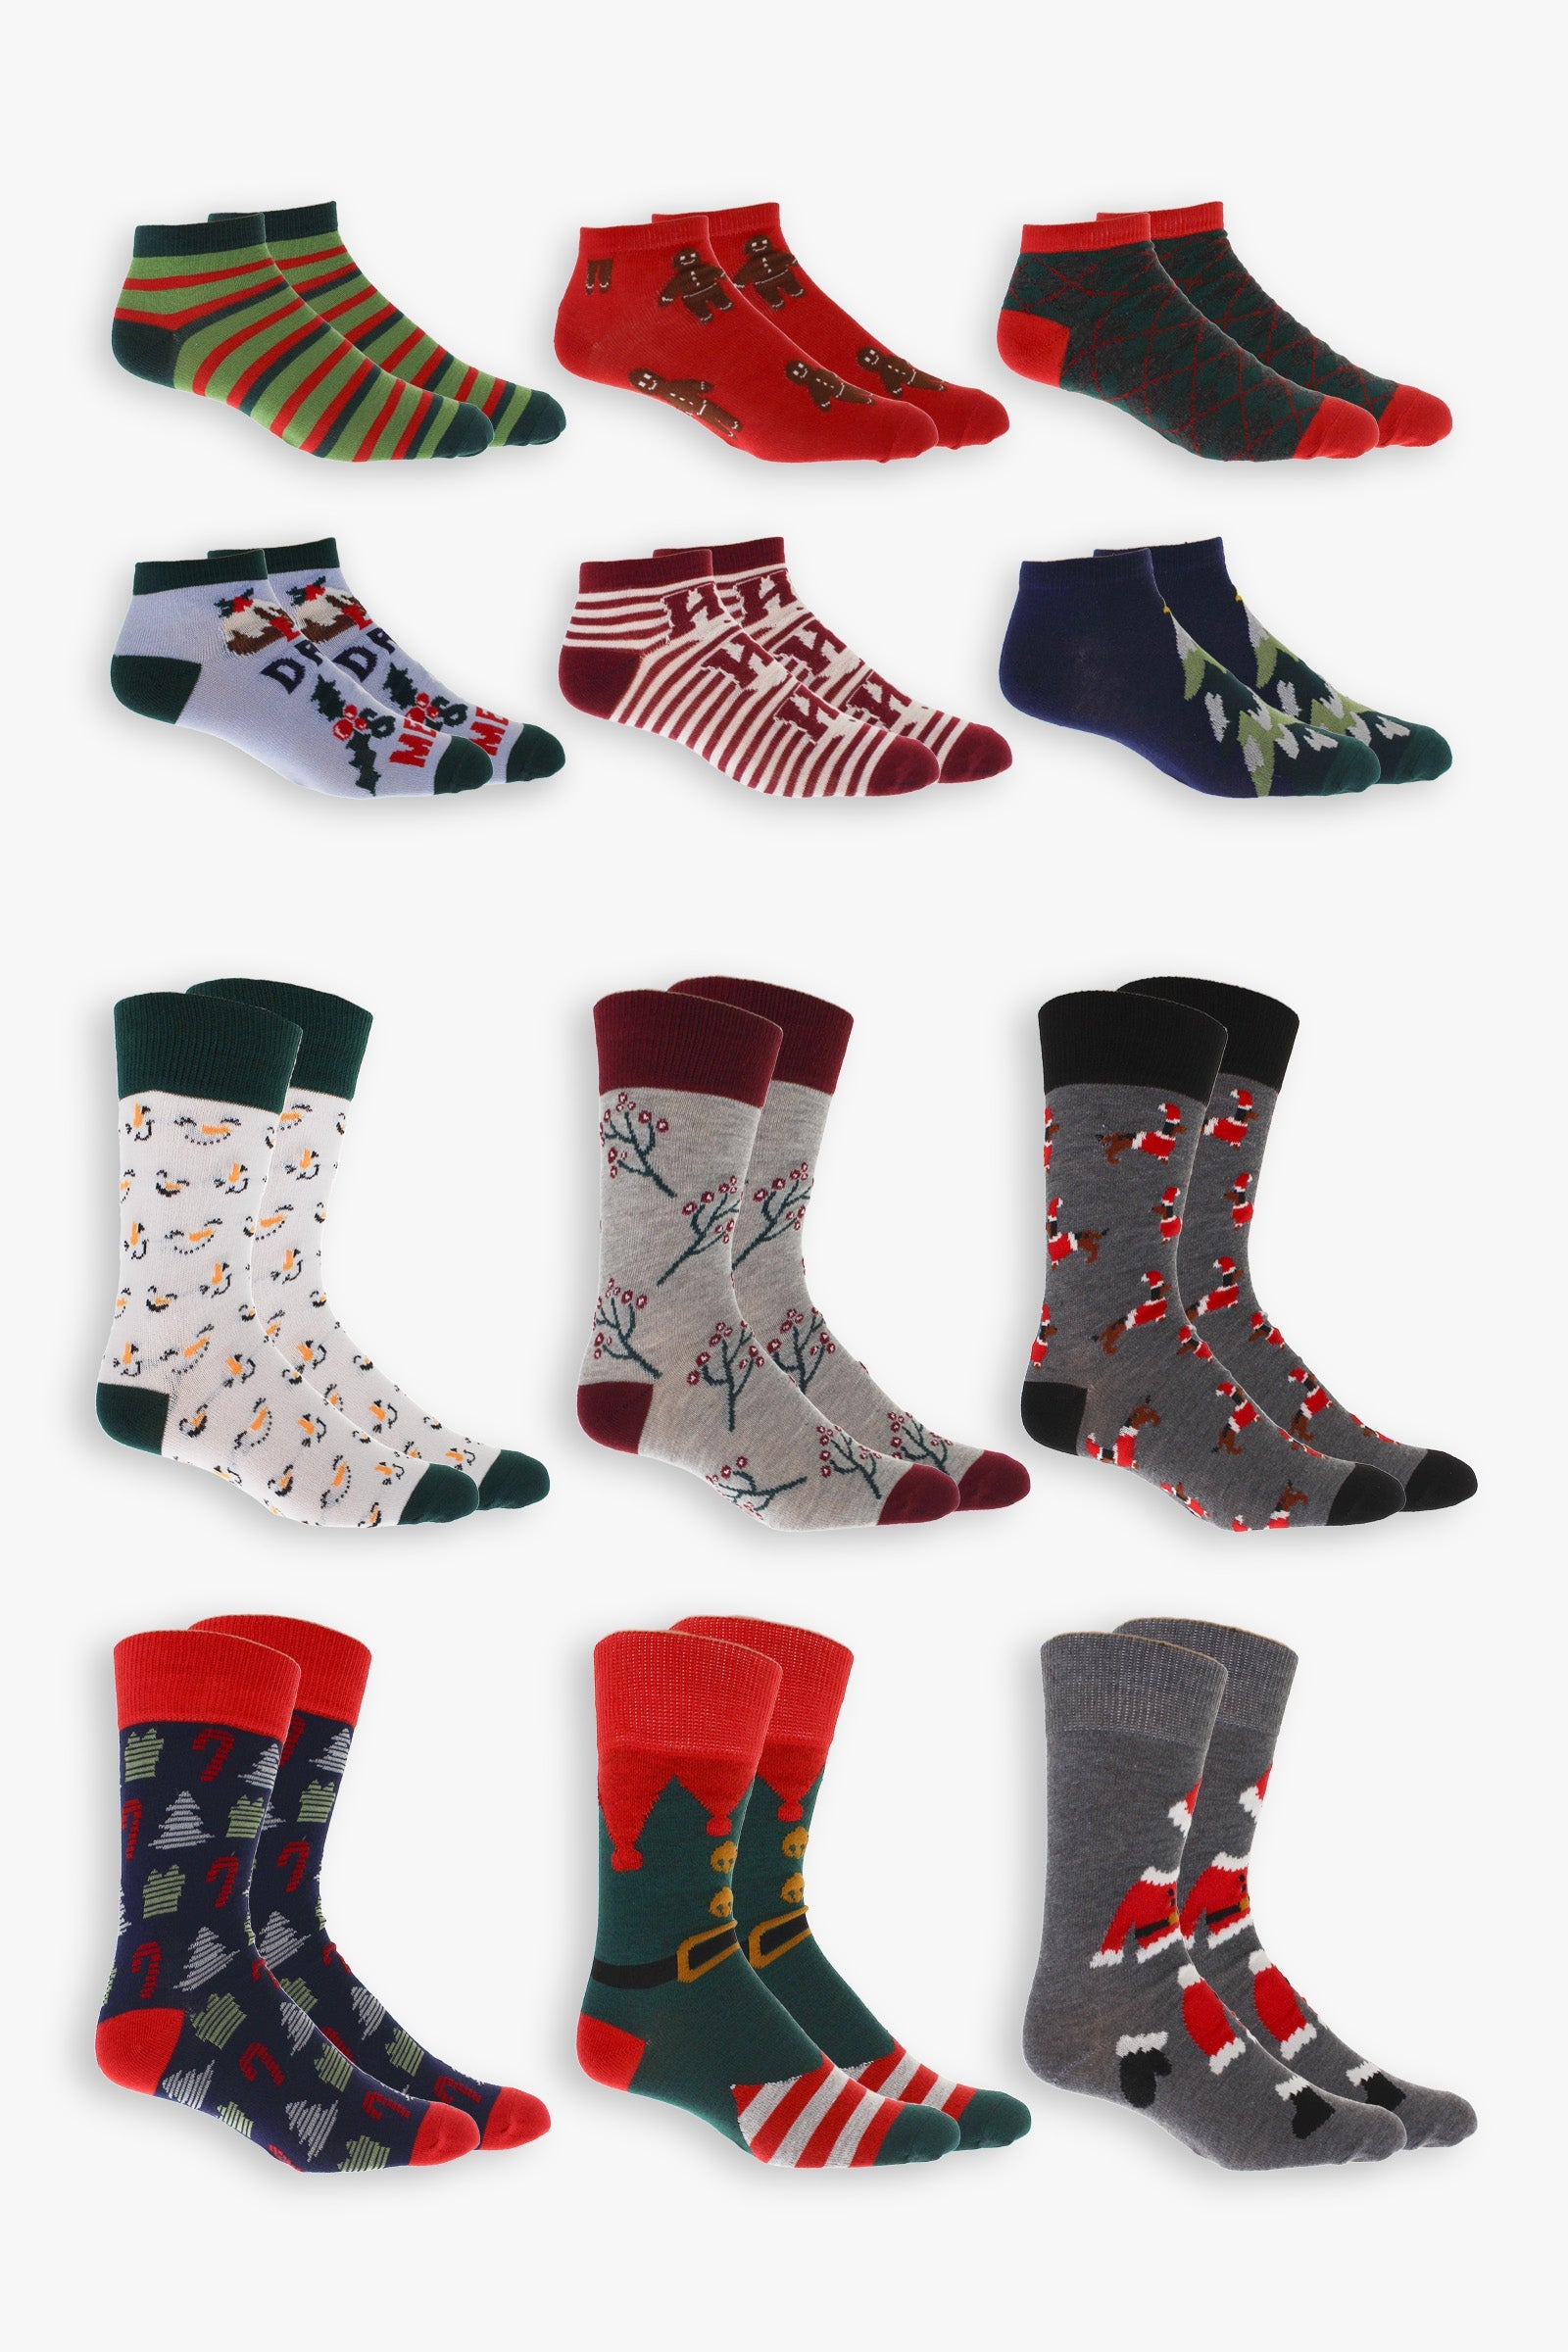 Men's "12 Days of Socks" Advent Calendar Gift Box | 12 Days of Holiday Socks | Men's Sock Size 10-13, Shoe Size 7-12